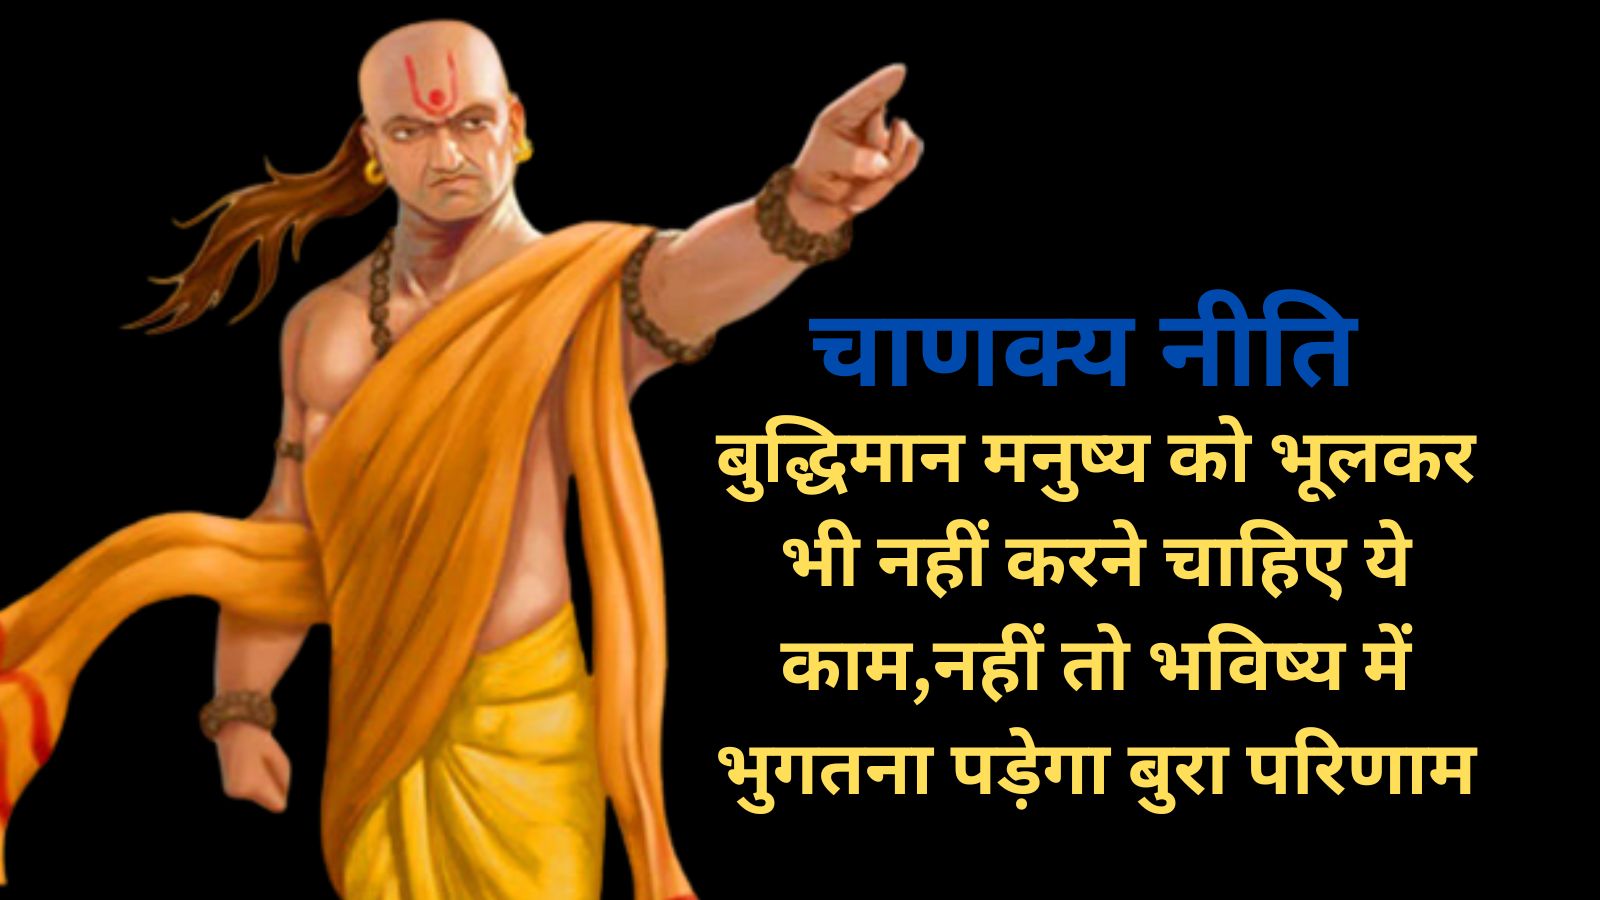 Chanakya Niti: बुद्धिमान मनुष्य को भूलकर भी नहीं करने चाहिए ये काम,नहीं तो भविष्य में भुगतना पड़ेगा बुरा परिणाम